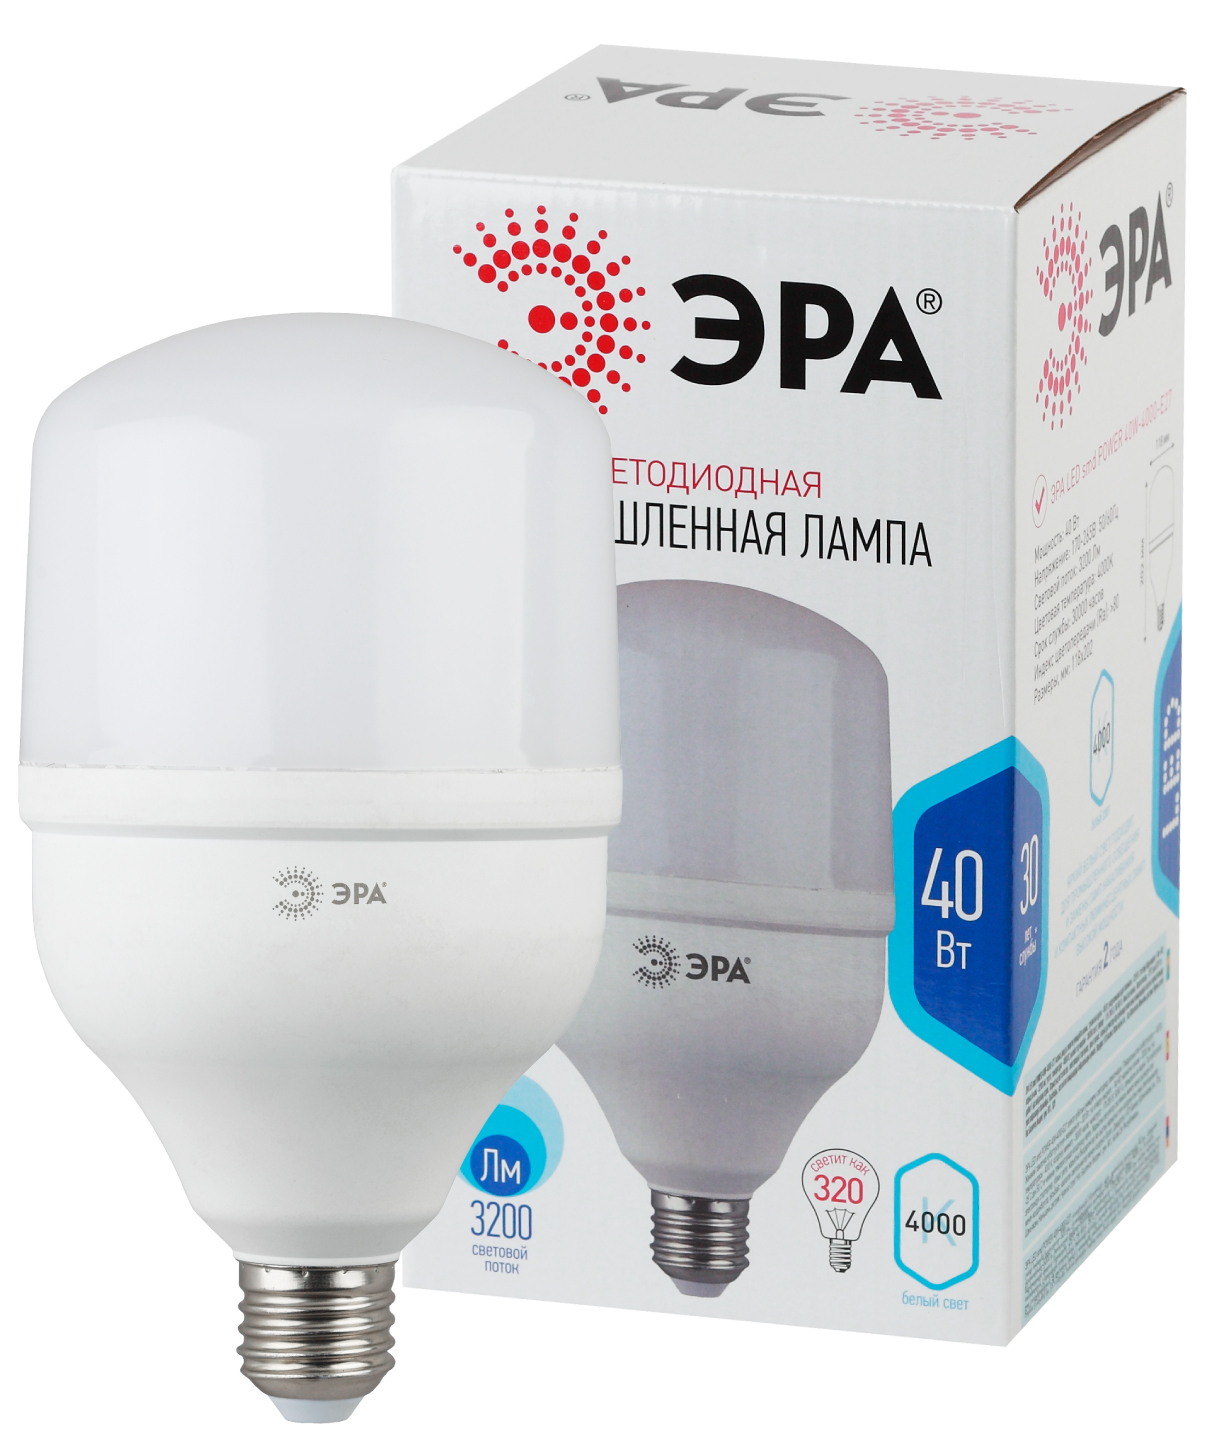 Лампа светодиодная ЭРА STD LED POWER T120-40W-4000-E27 E27 / Е27 40 Вт колокол нейтральный белый свет